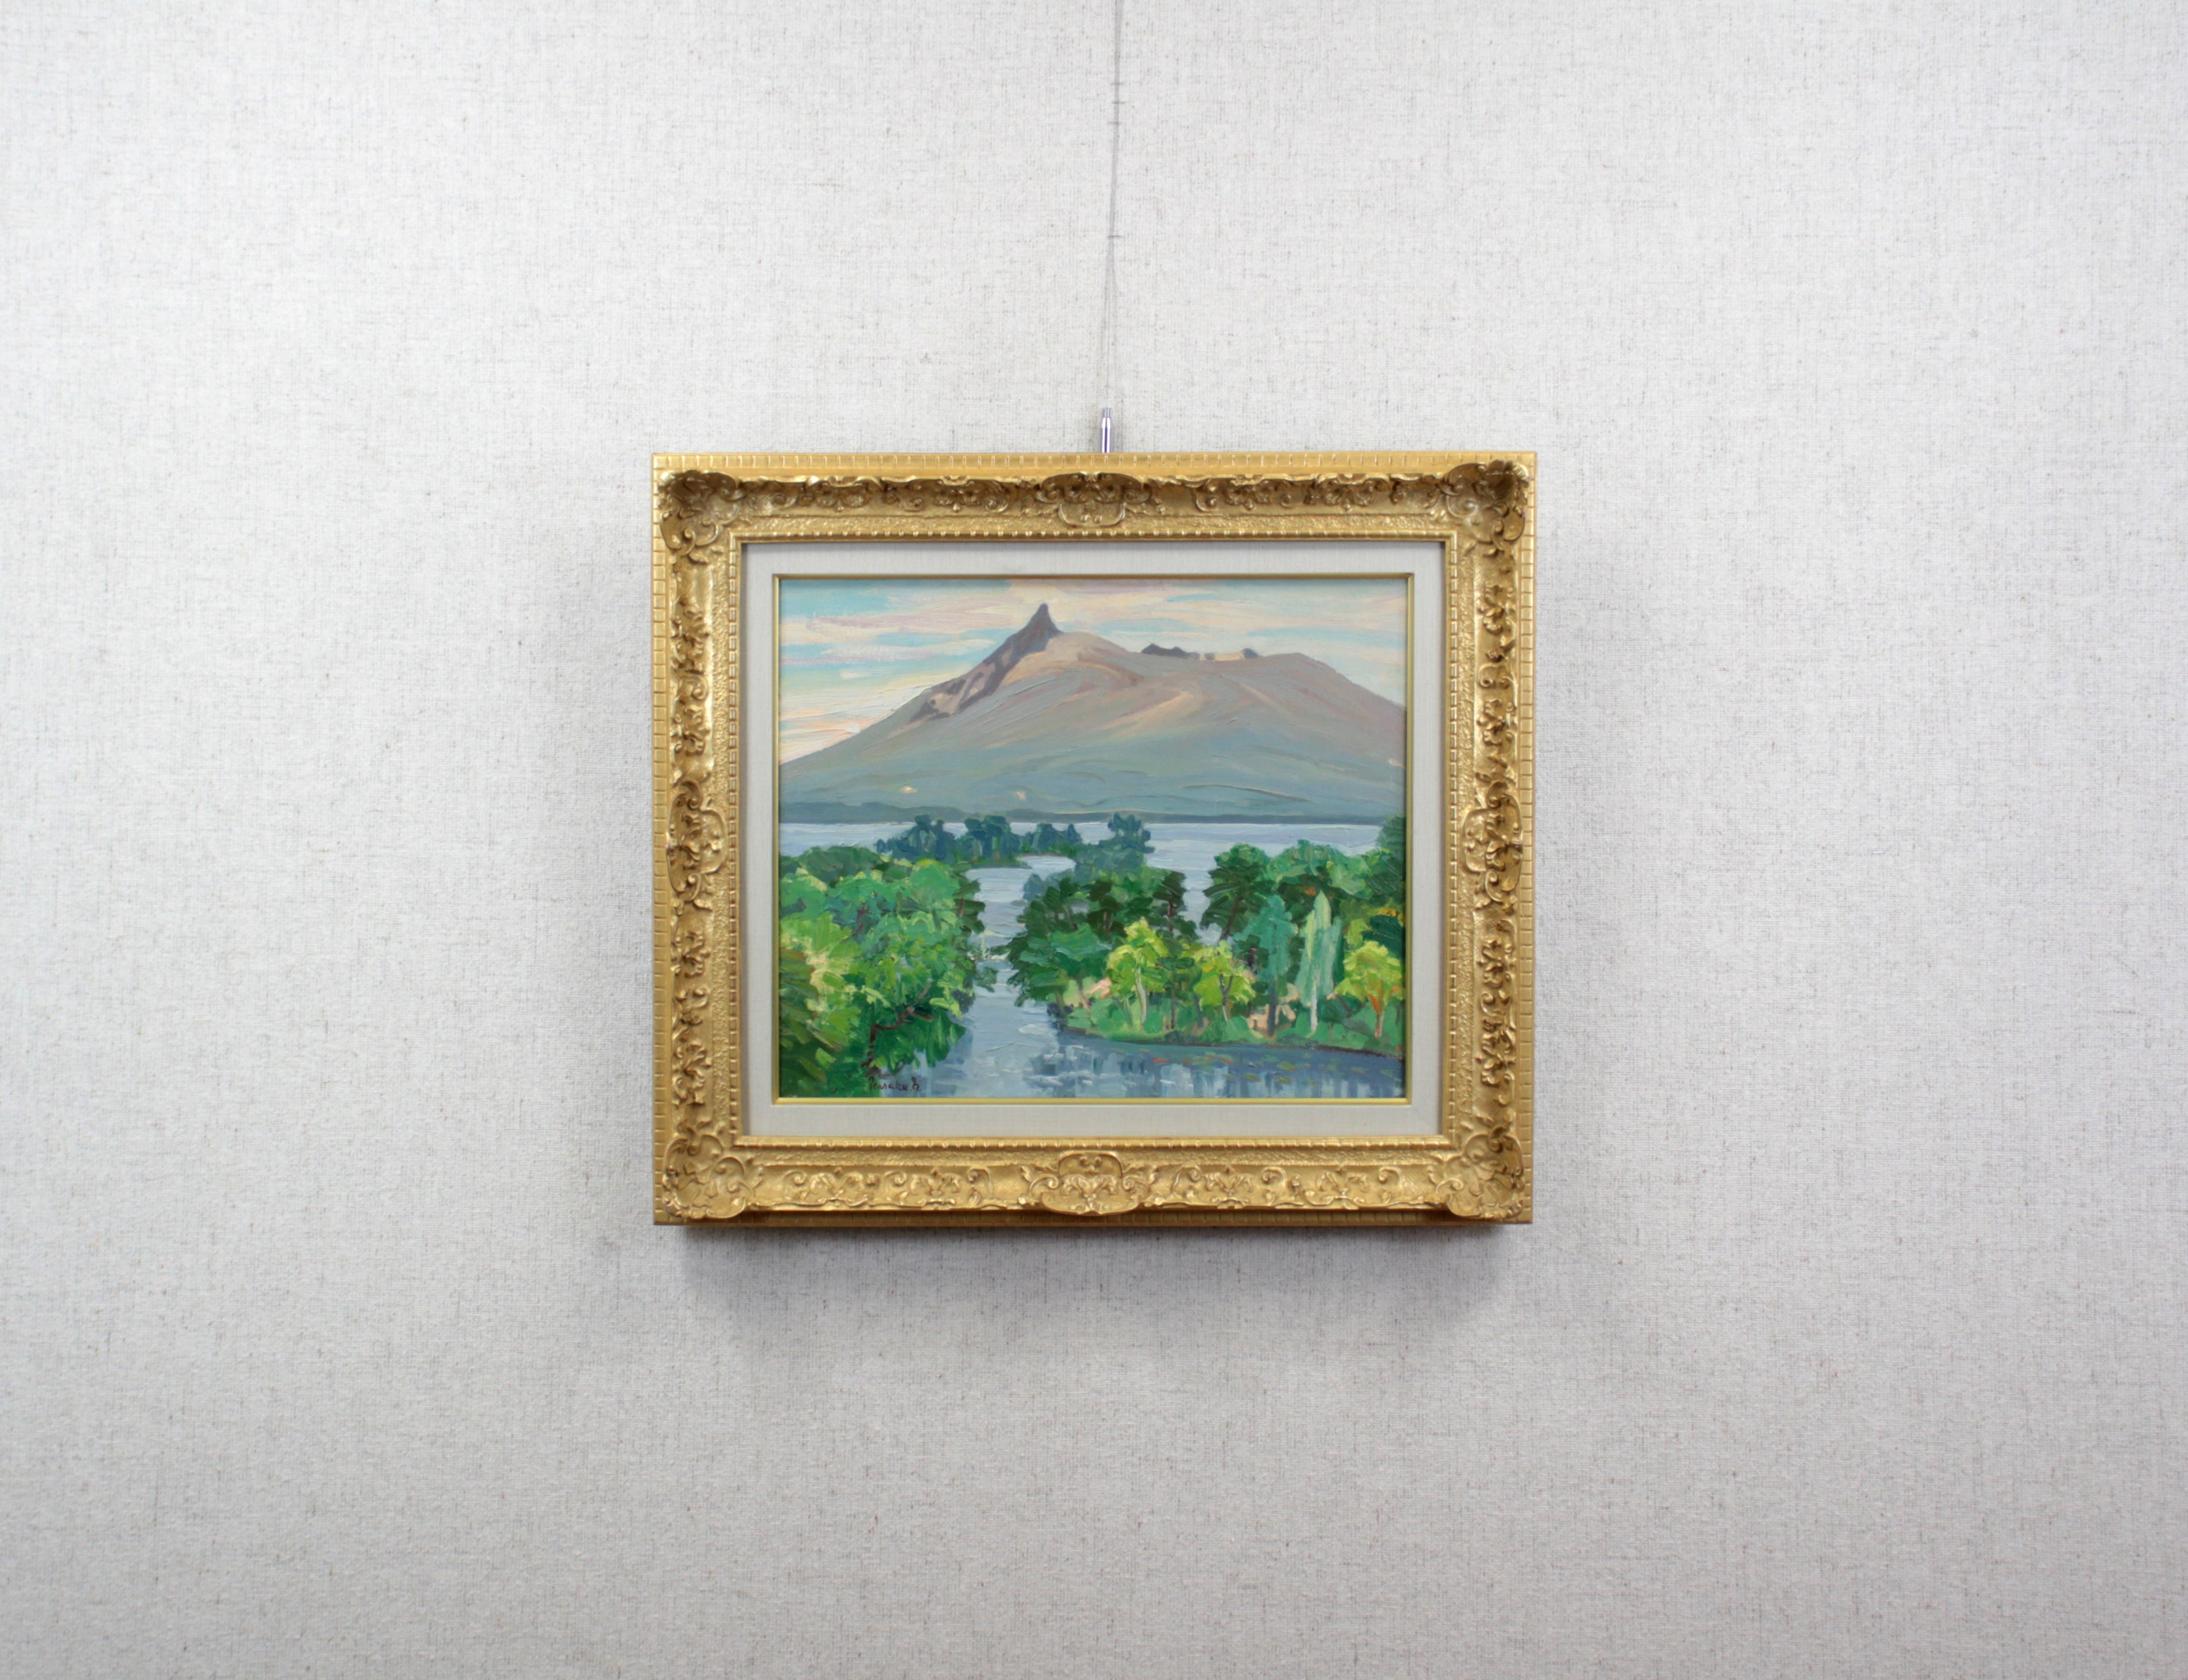 中村善策 『大沼と駒ヶ岳』 油彩画 - 北海道画廊